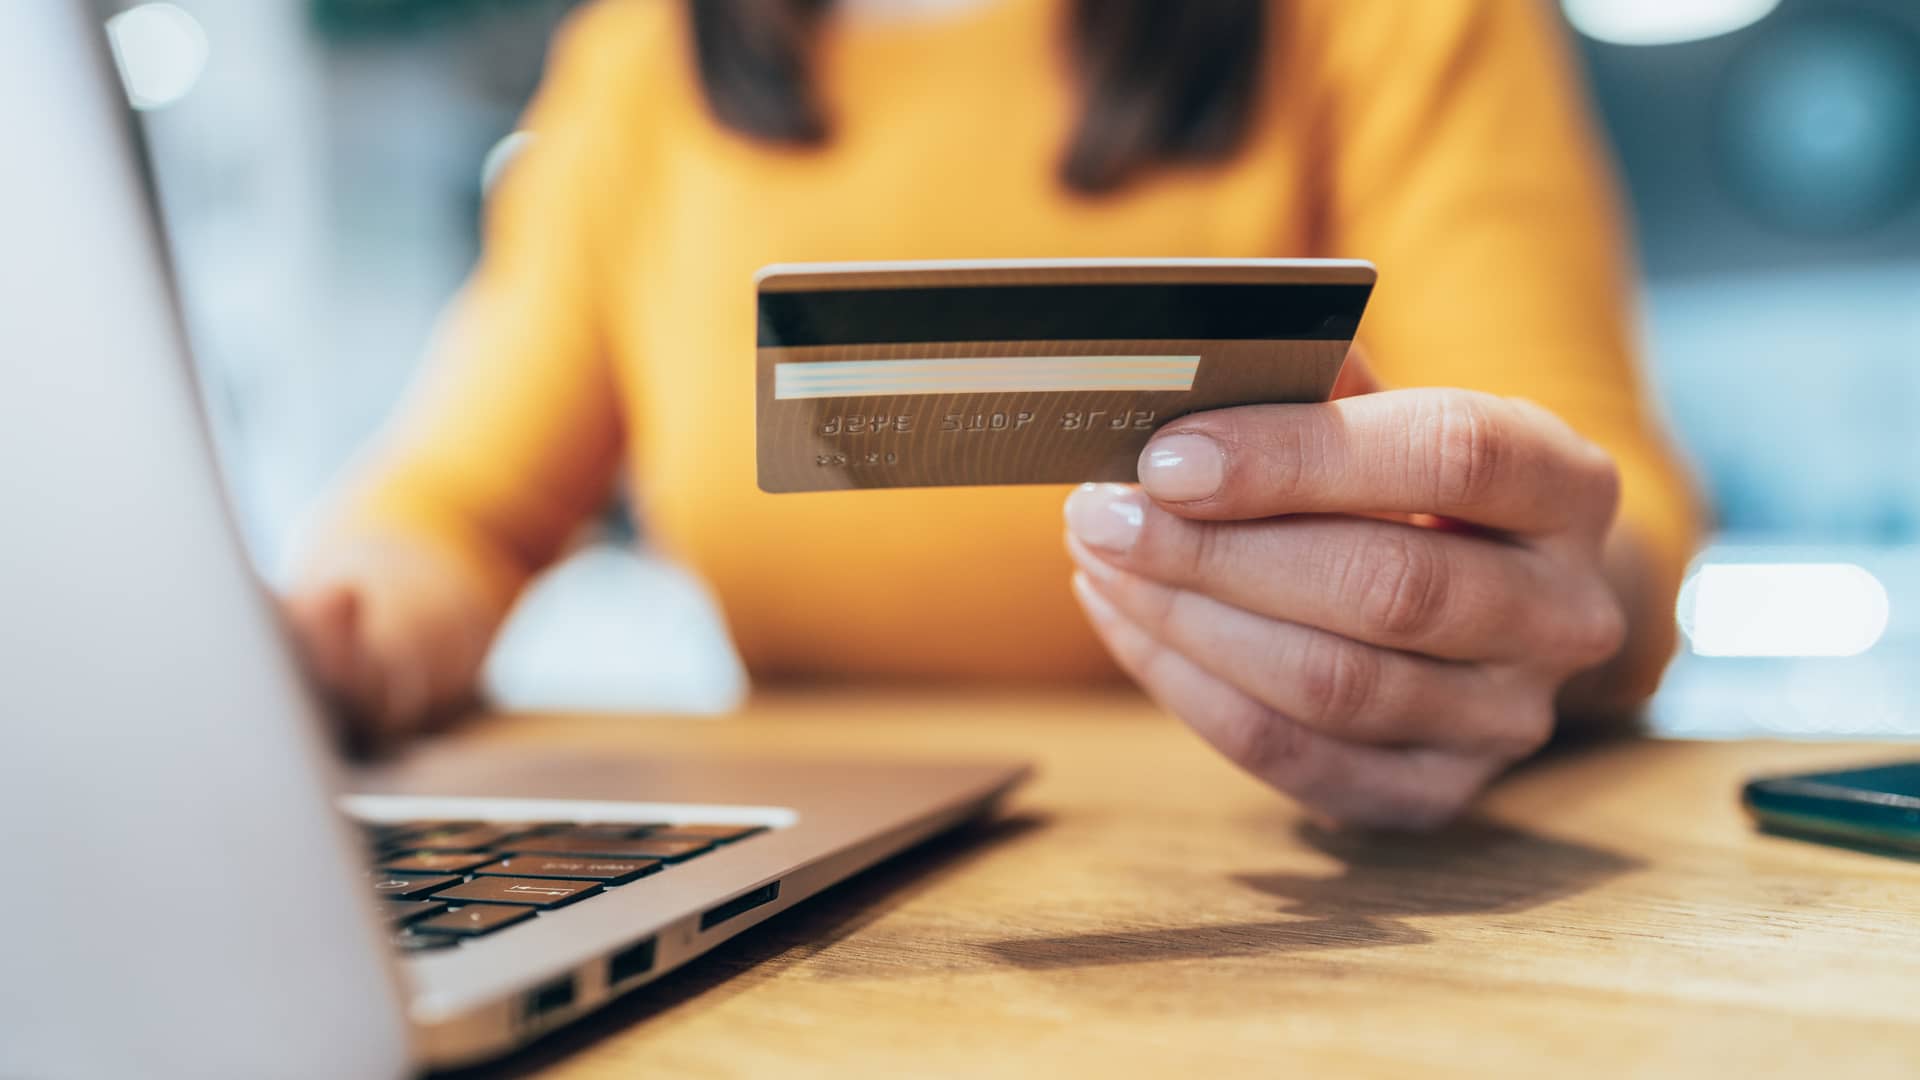 Mujer usando tarjeta de crédito de liberbank para realizar compra por internet con su laptop